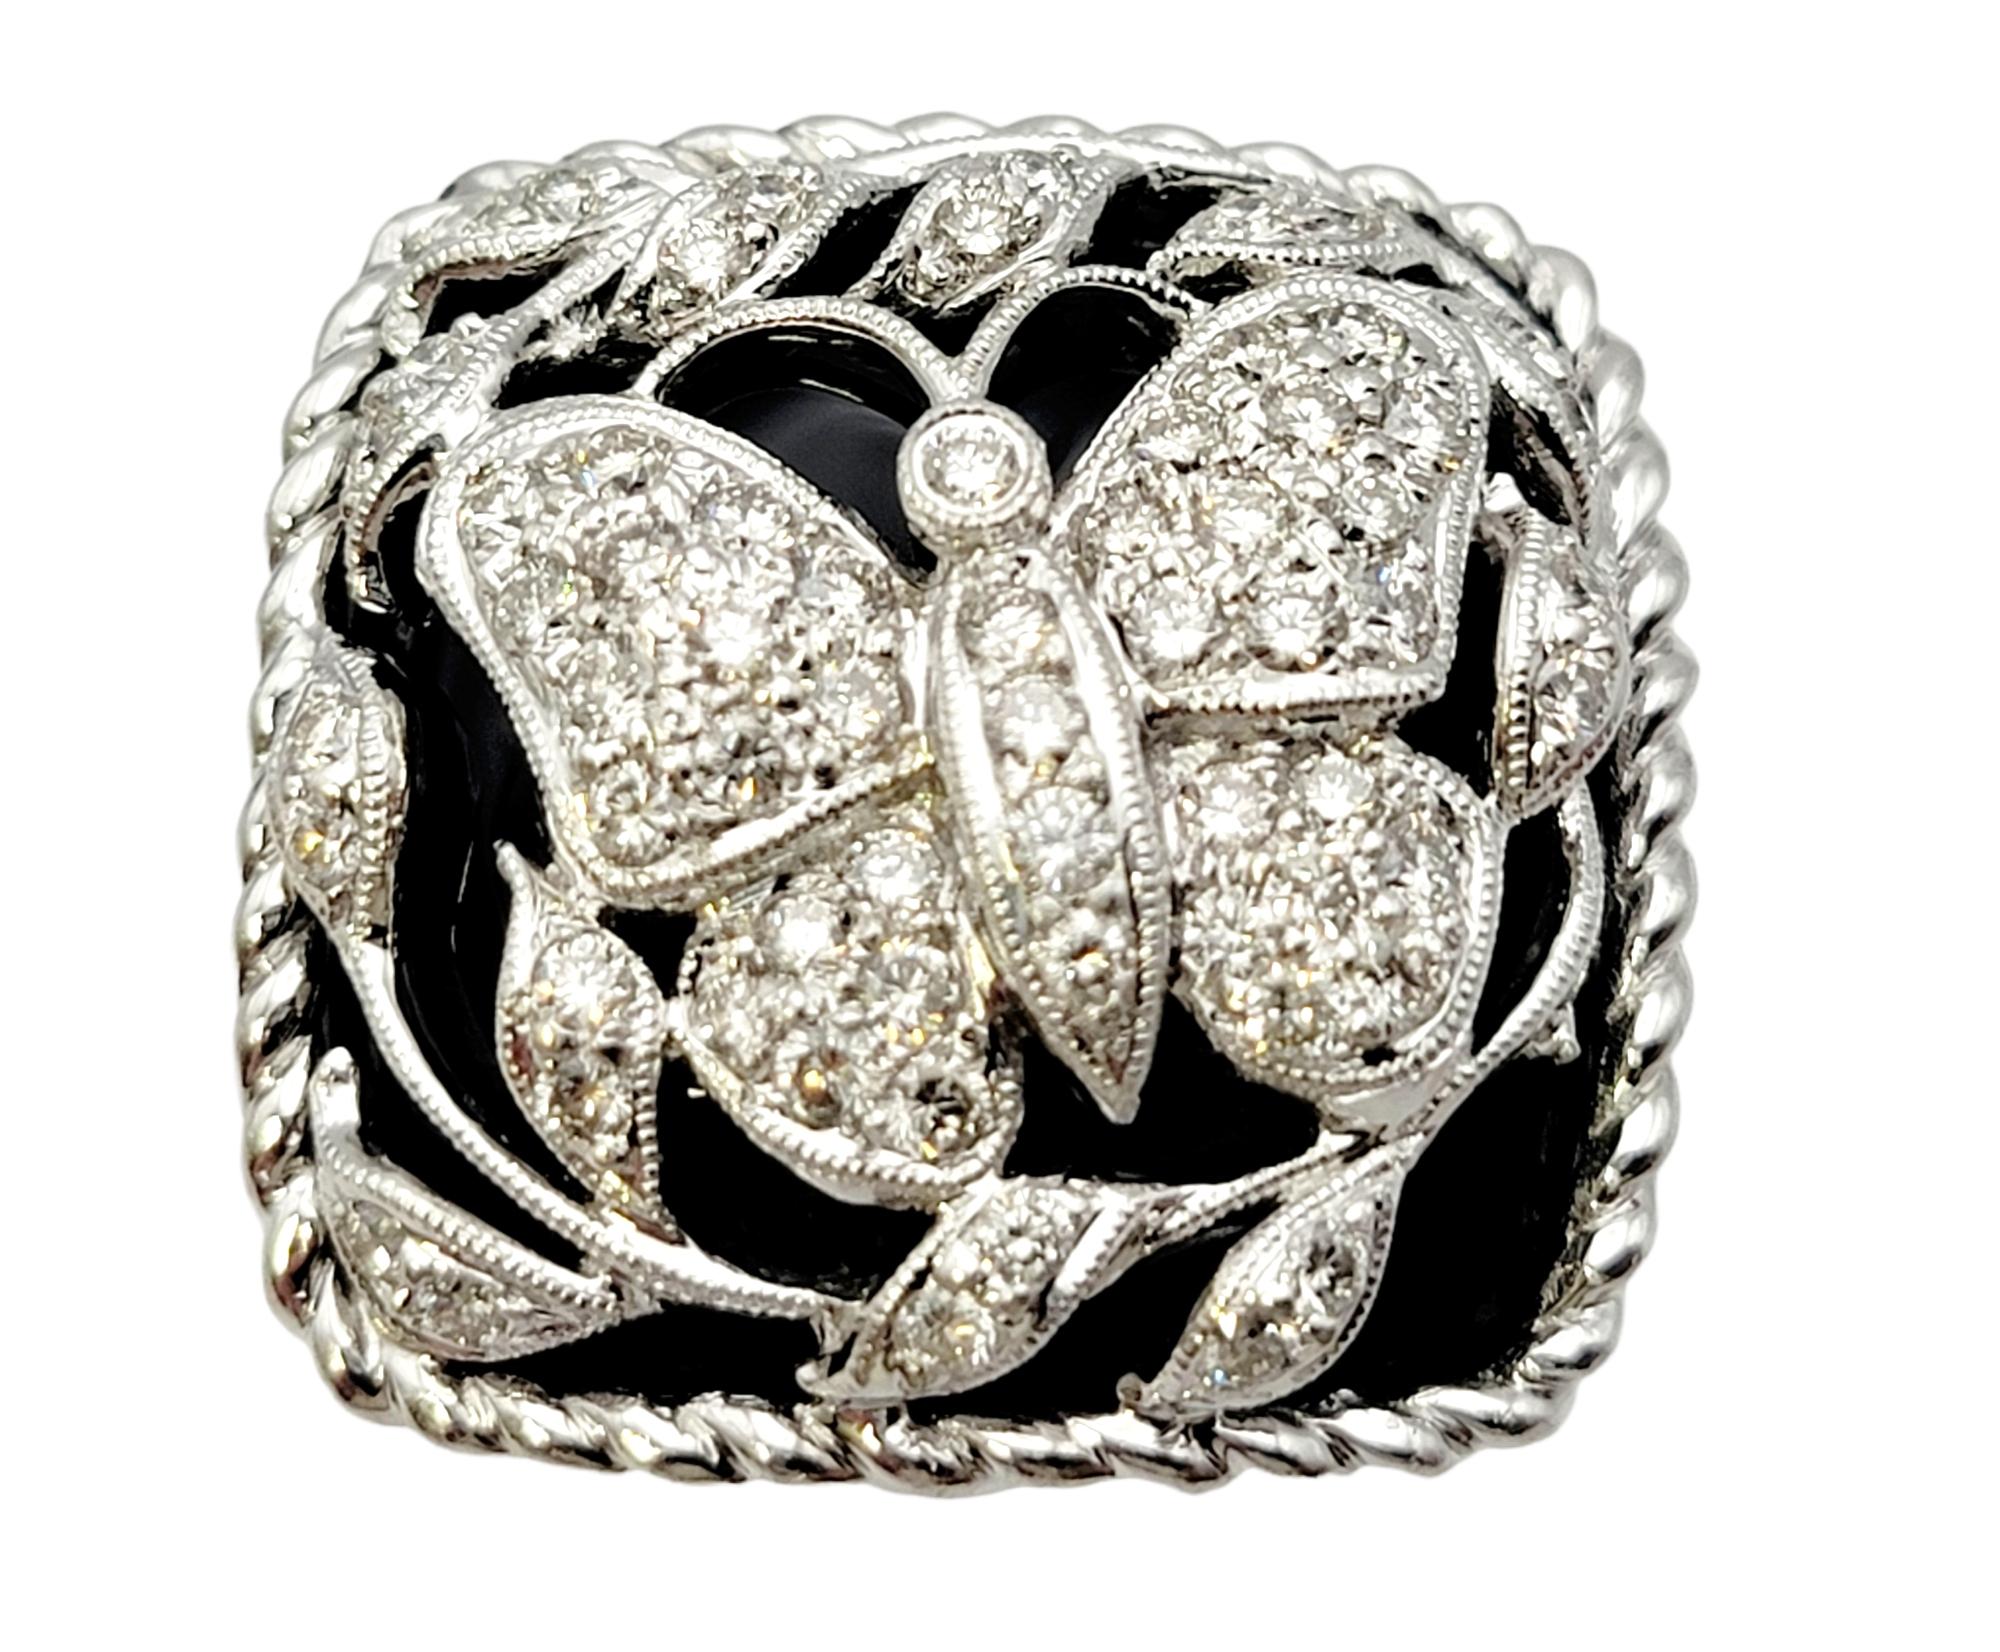 Ringgröße: 6.75

Dieser kühne und schöne moderne Statement-Ring ist absolut WOW! Ein schillernder diamantener Schmetterling ziert den oberen Teil des quadratischen Onyxstücks, umgeben von gepflasterten Diamantblättern und komplizierten